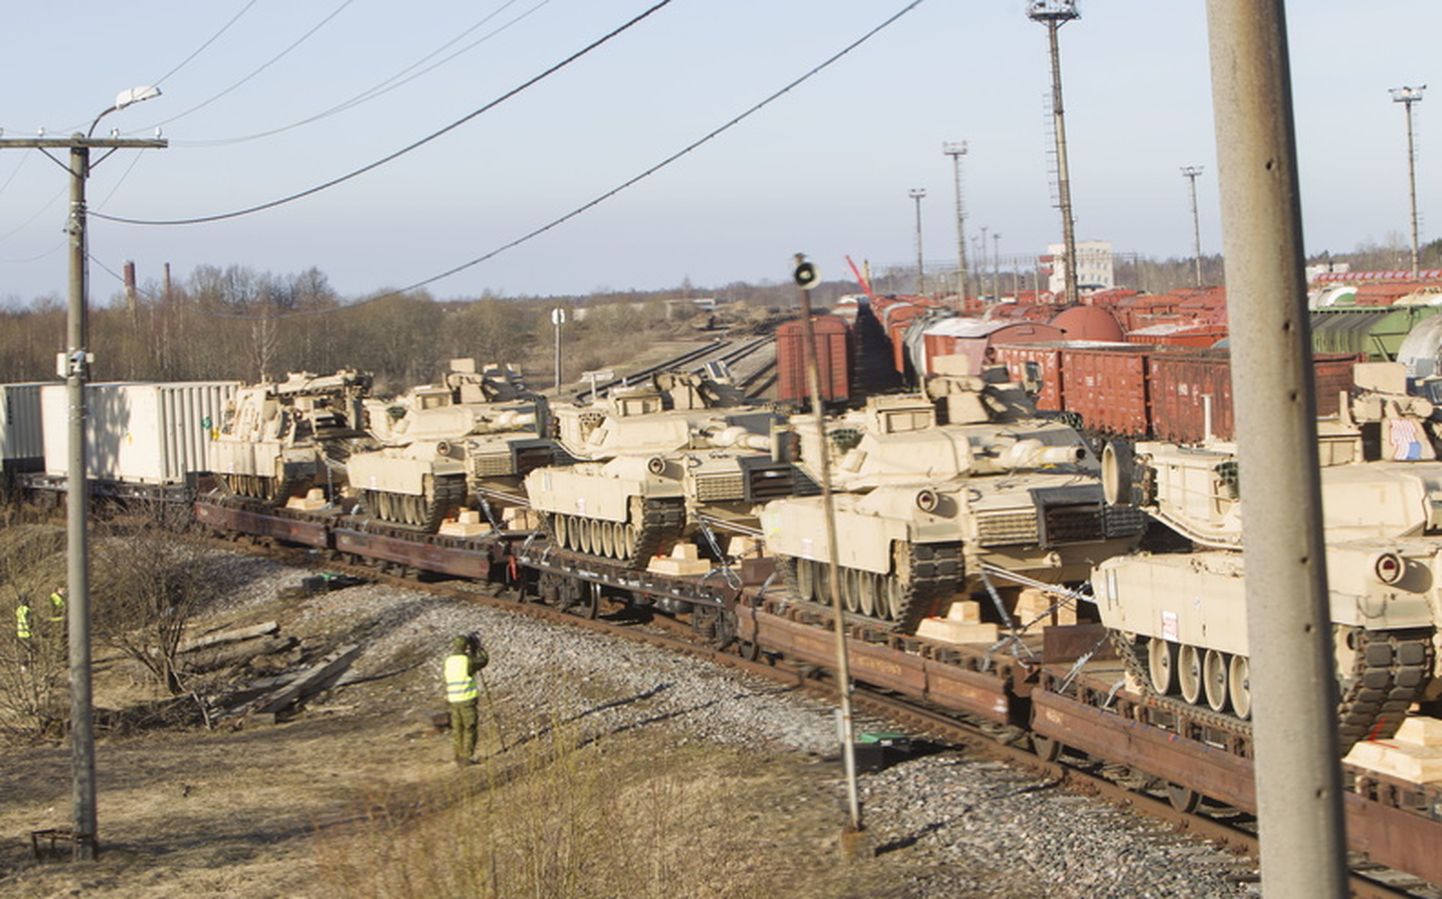 Ameerika Ühendriikide tankirühma Abrams tankid saabusid 2015. aastal Eestisse suurõppusele Siil mööda raudteed.